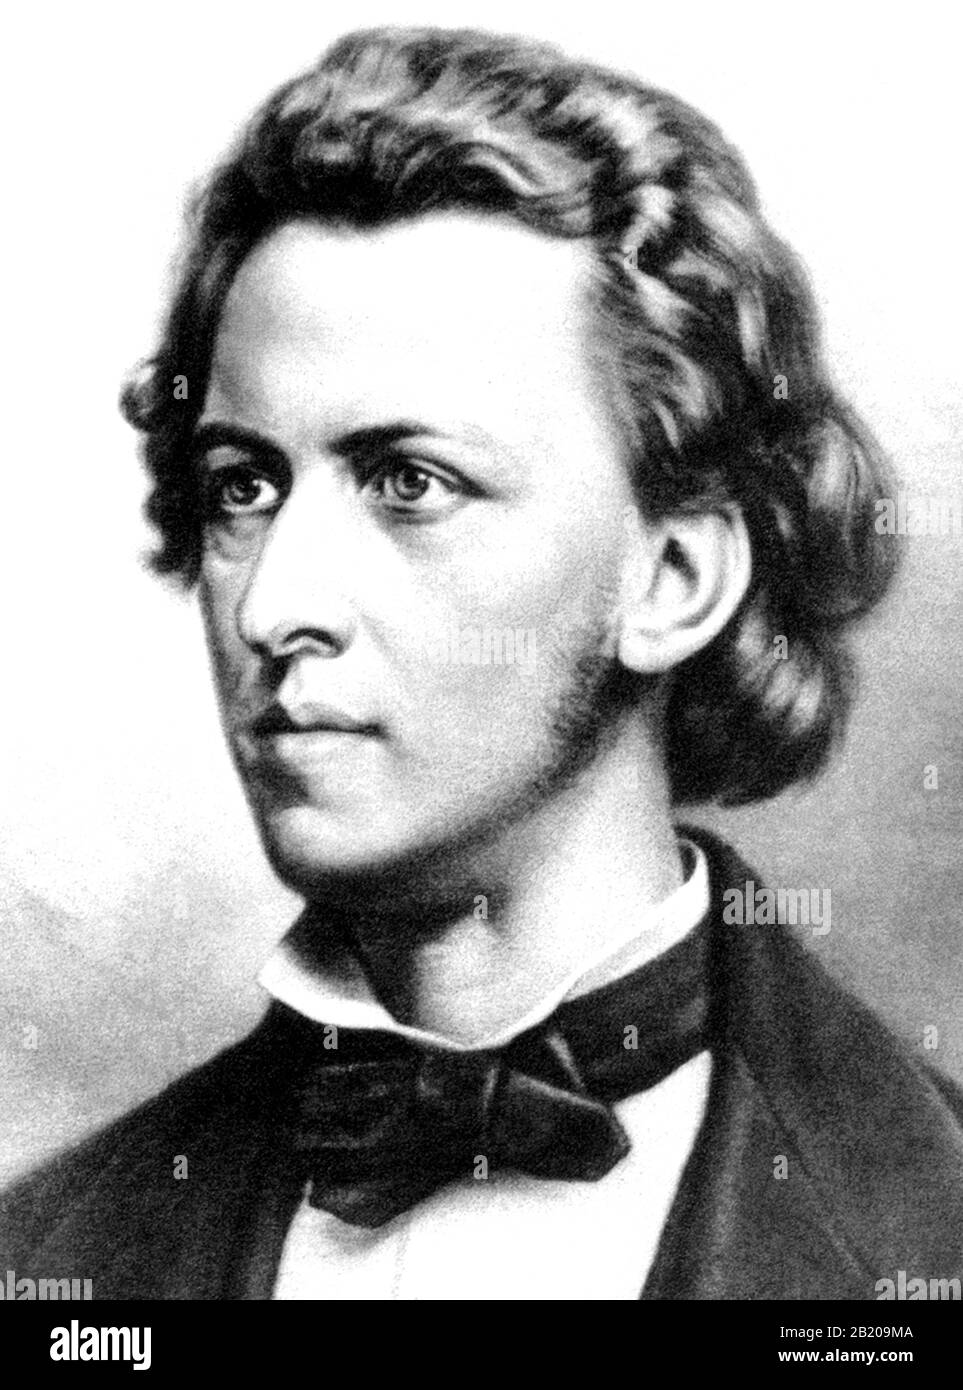 Vintage-Porträt des polnischen Komponisten und Pianisten Frederic Chopin (1810 - 1849). Details aus einem Druck von ca. 1902 von W L Haskell. Stockfoto